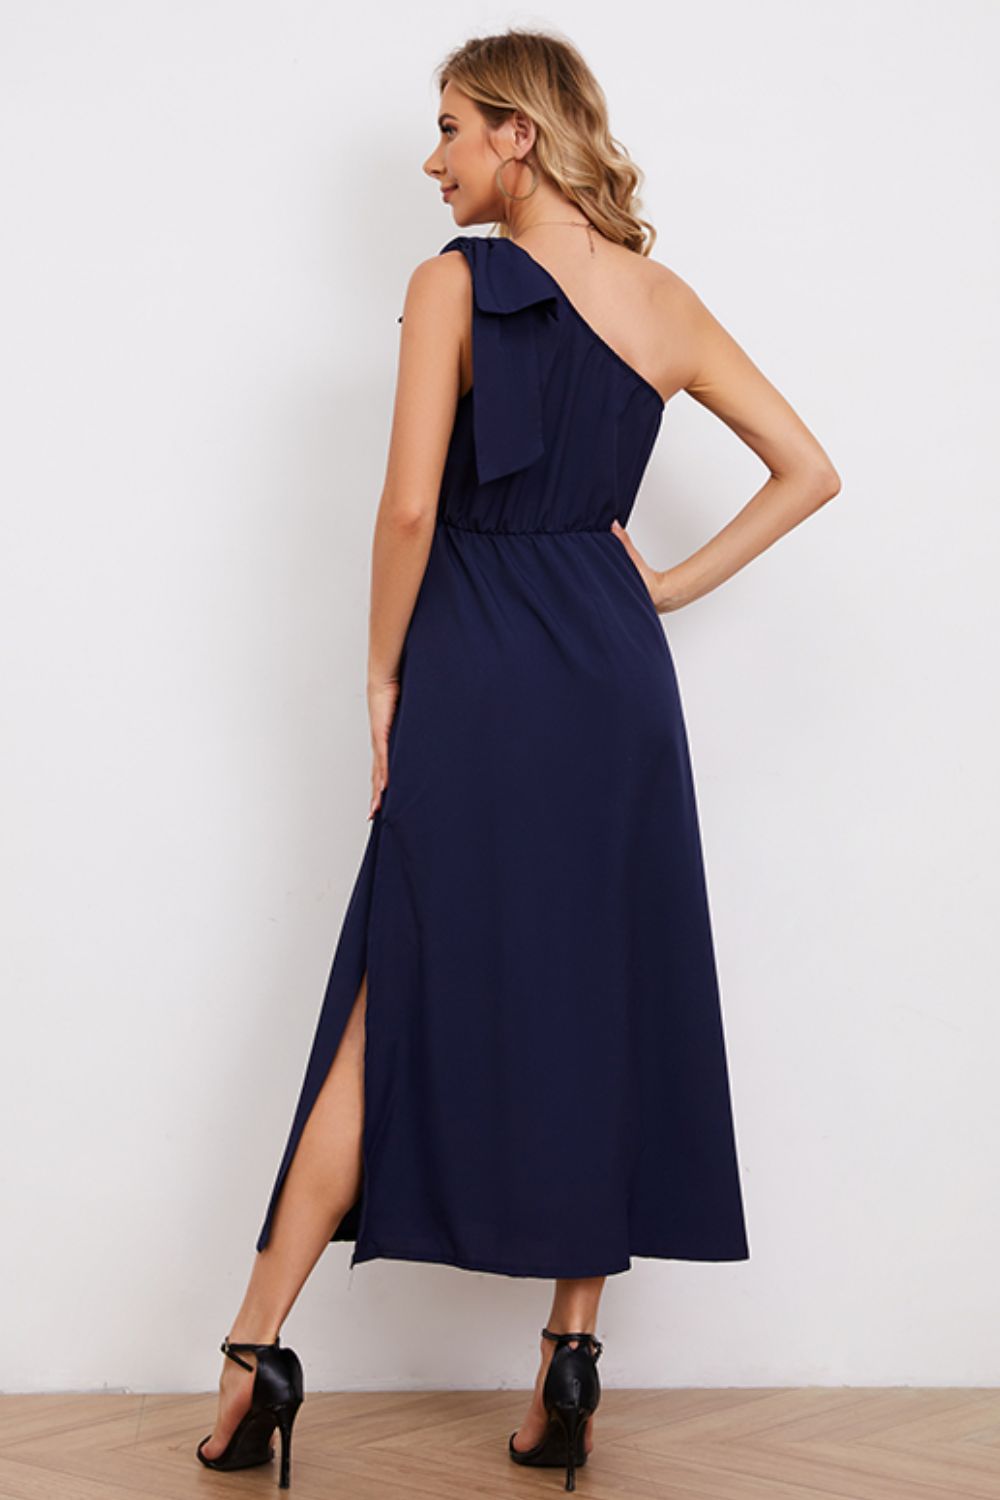 Women’s One-Shoulder Sleeveless Slit Dress